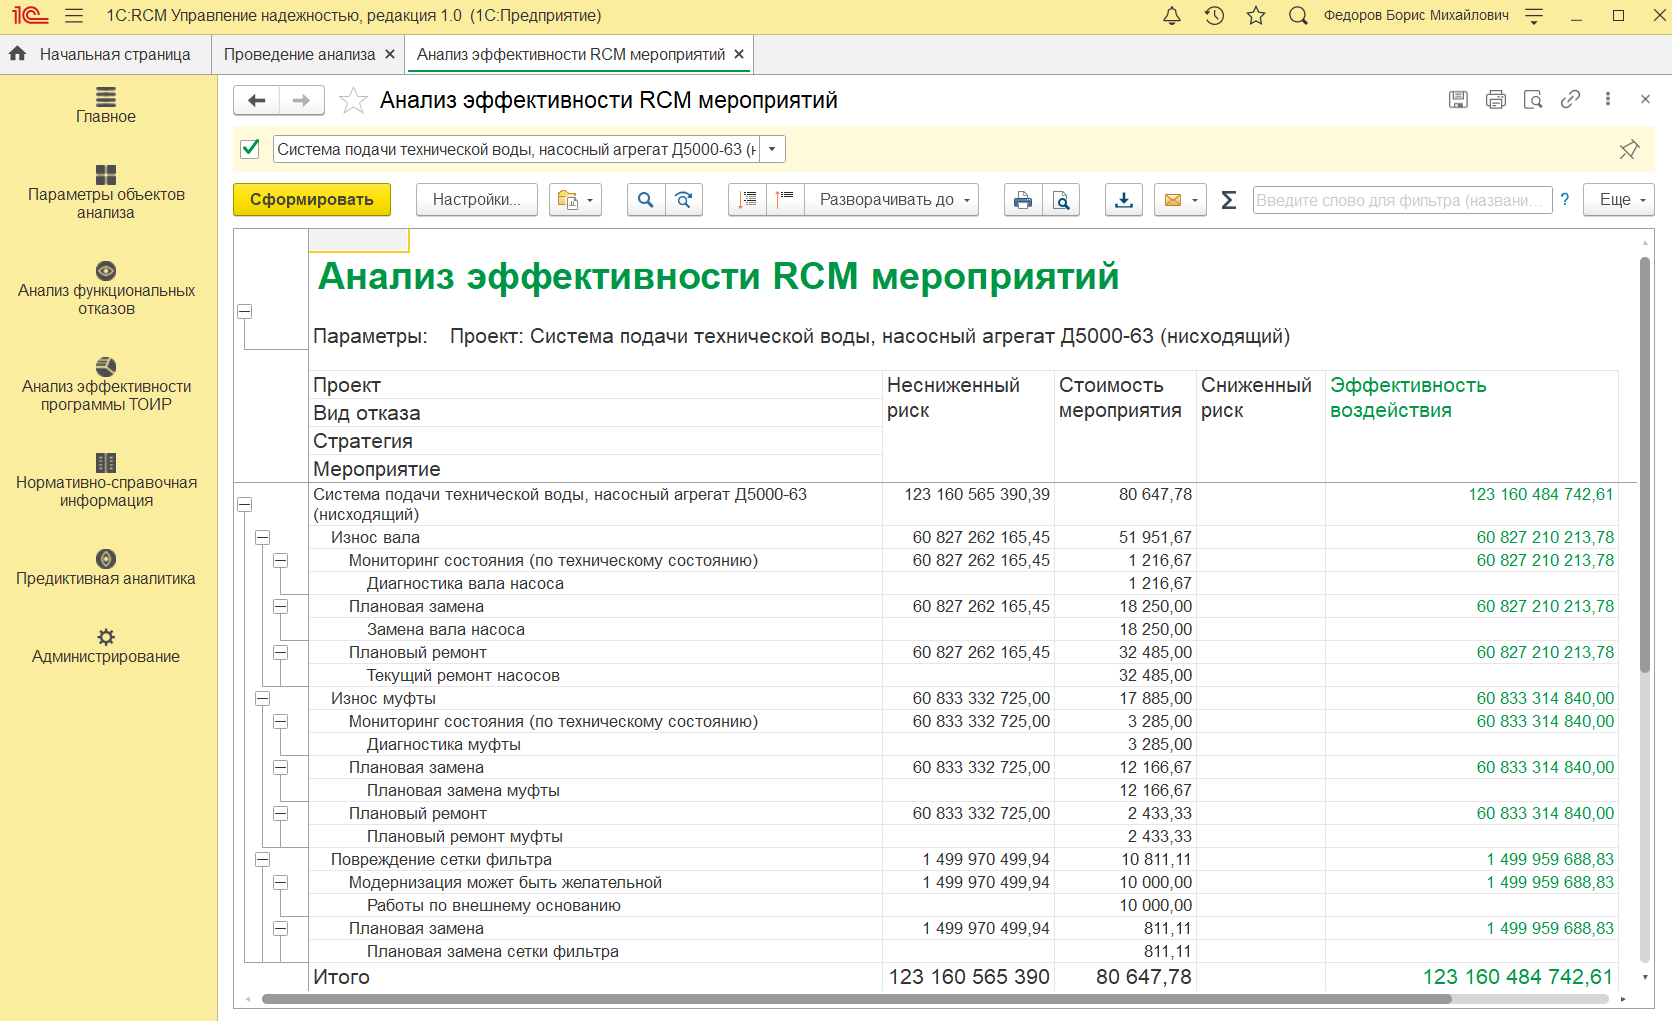 Аналитический отчёт о стоимости технического обслуживания в системе 1С:RCM Управление надёжностью